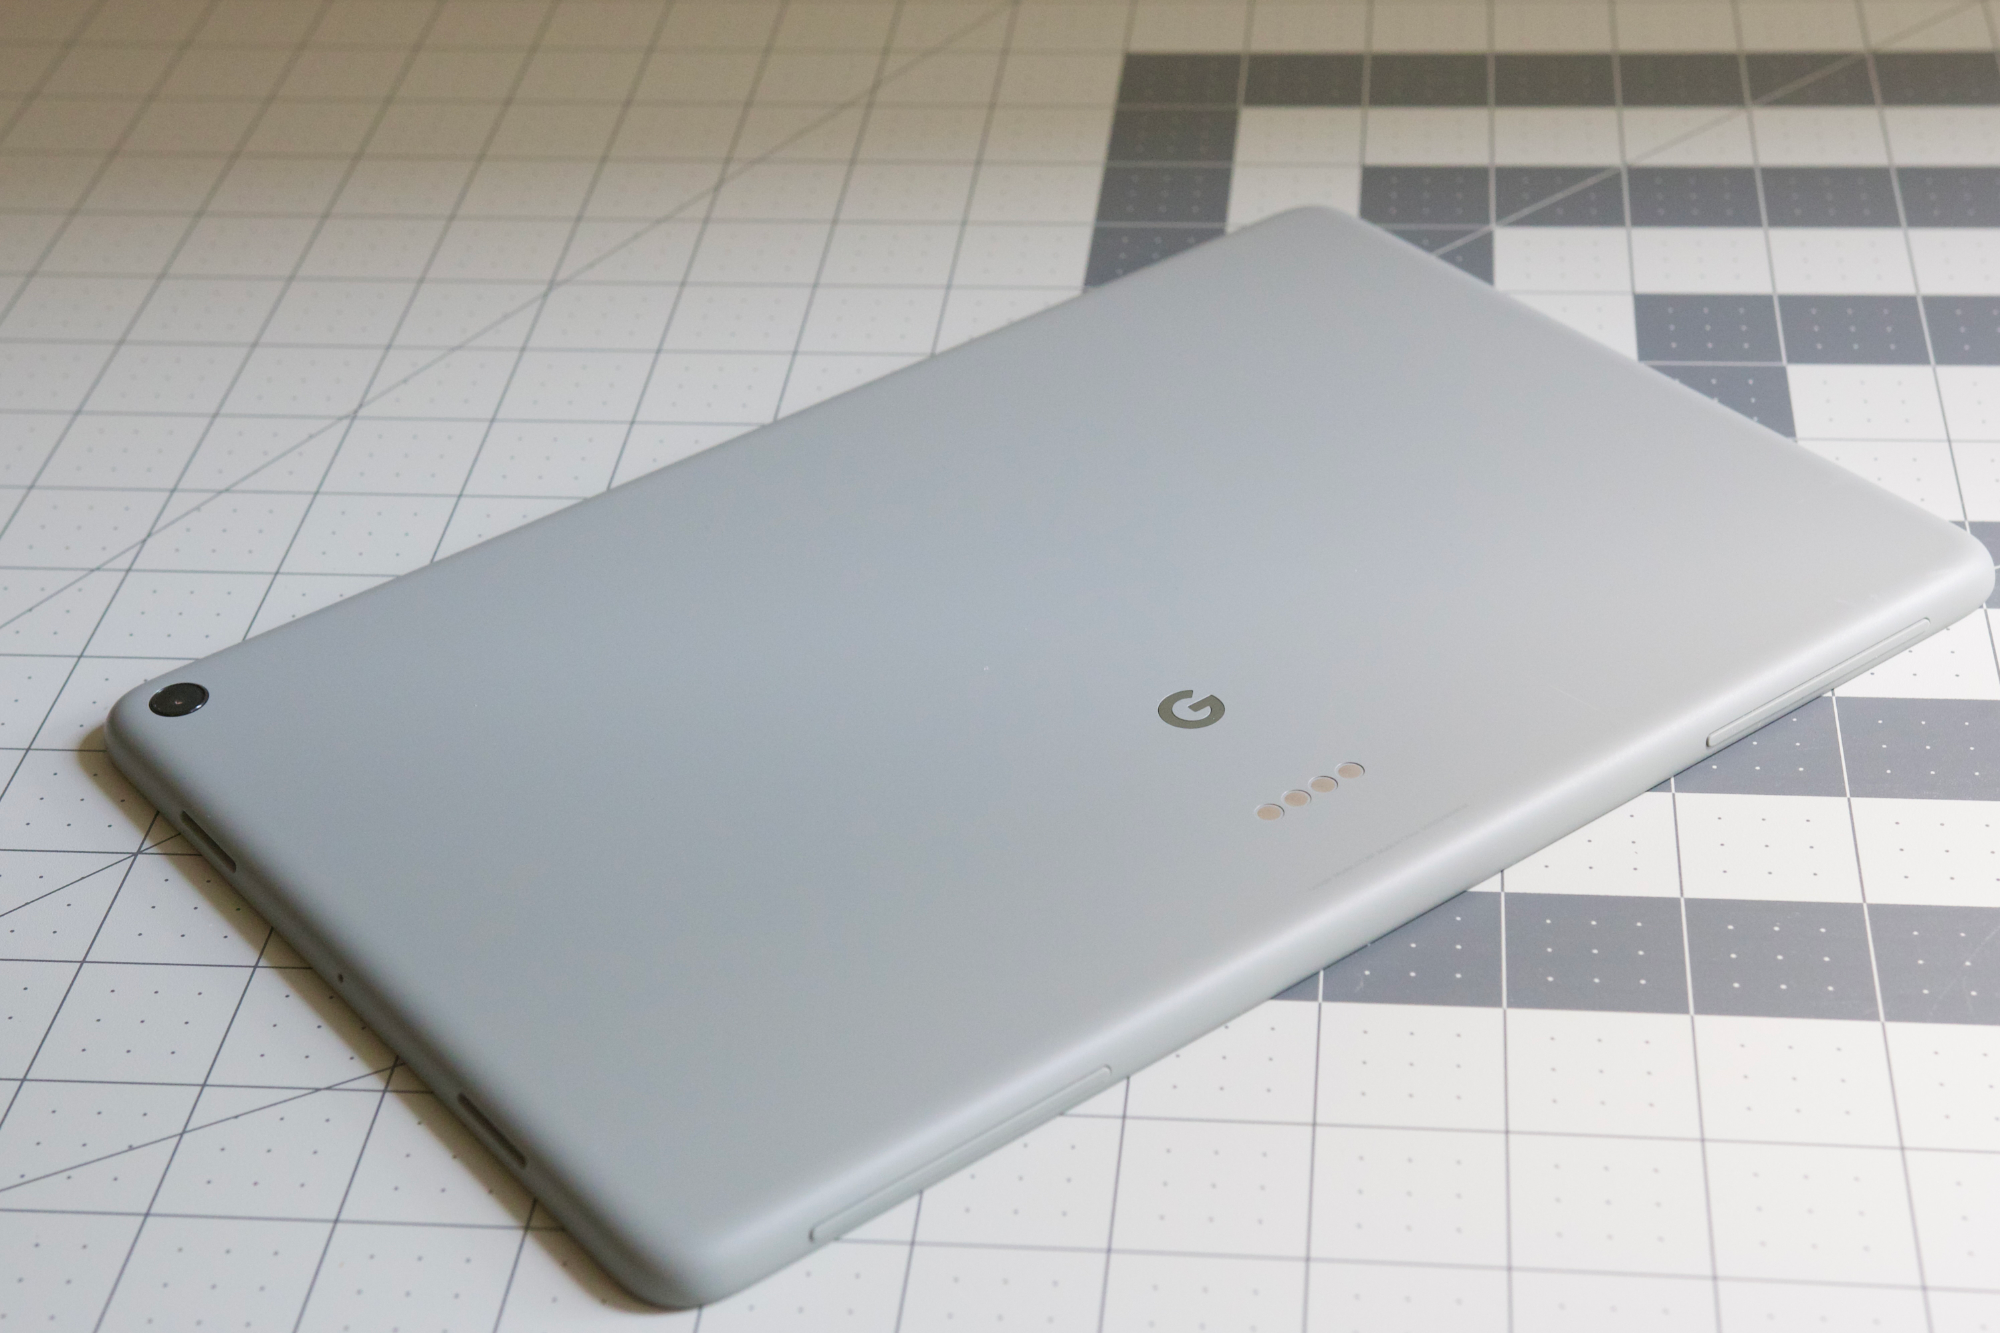 Планшет Google Pixel на столе, показывающий свою заднюю часть